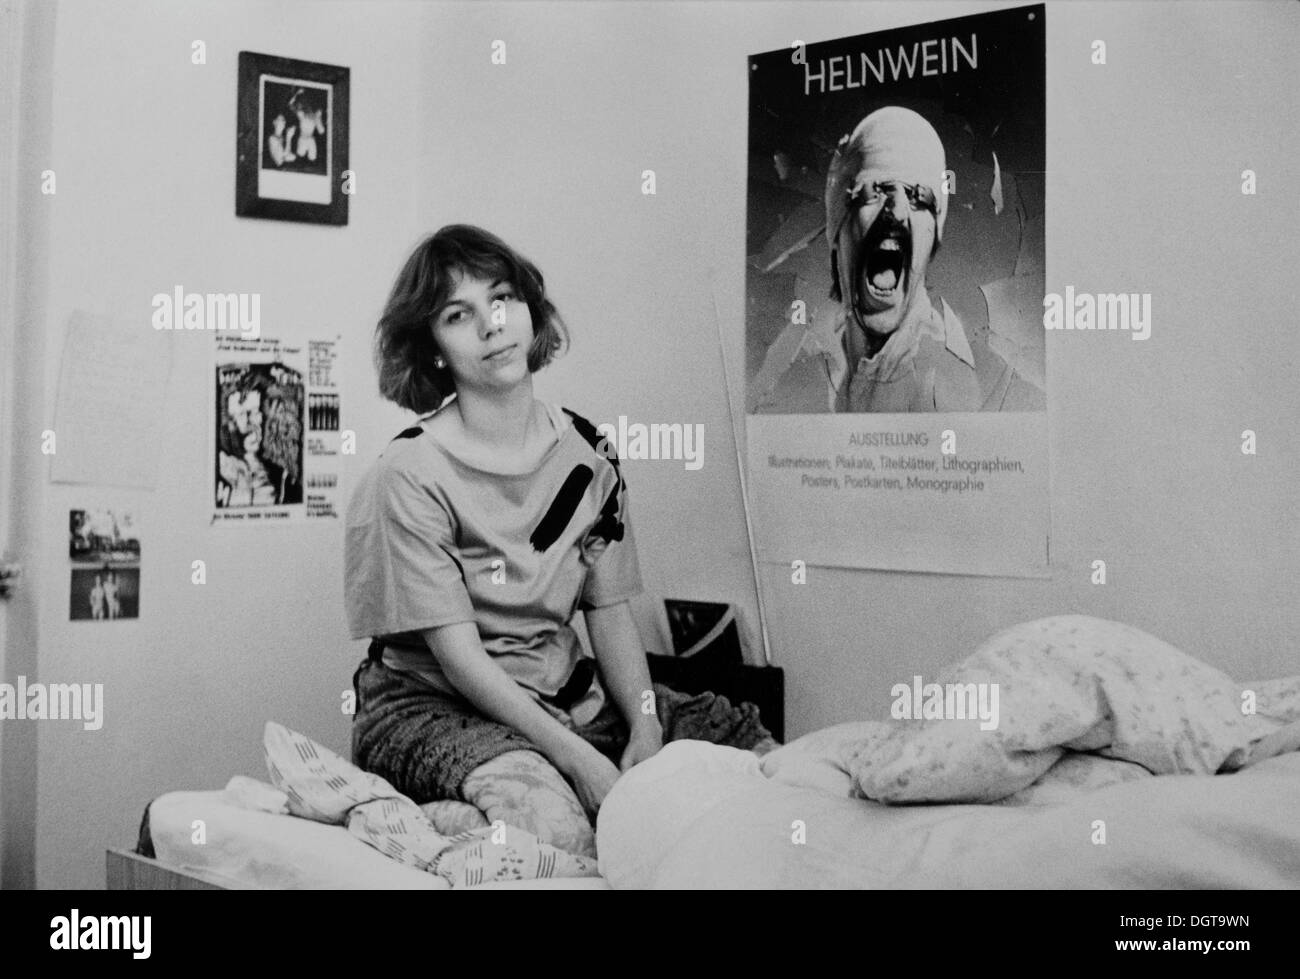 Jeune femme, étudiant, avec poster de Helnwein, Leipzig, Saxe, Allemagne de l'Est, vers 1986. Banque D'Images